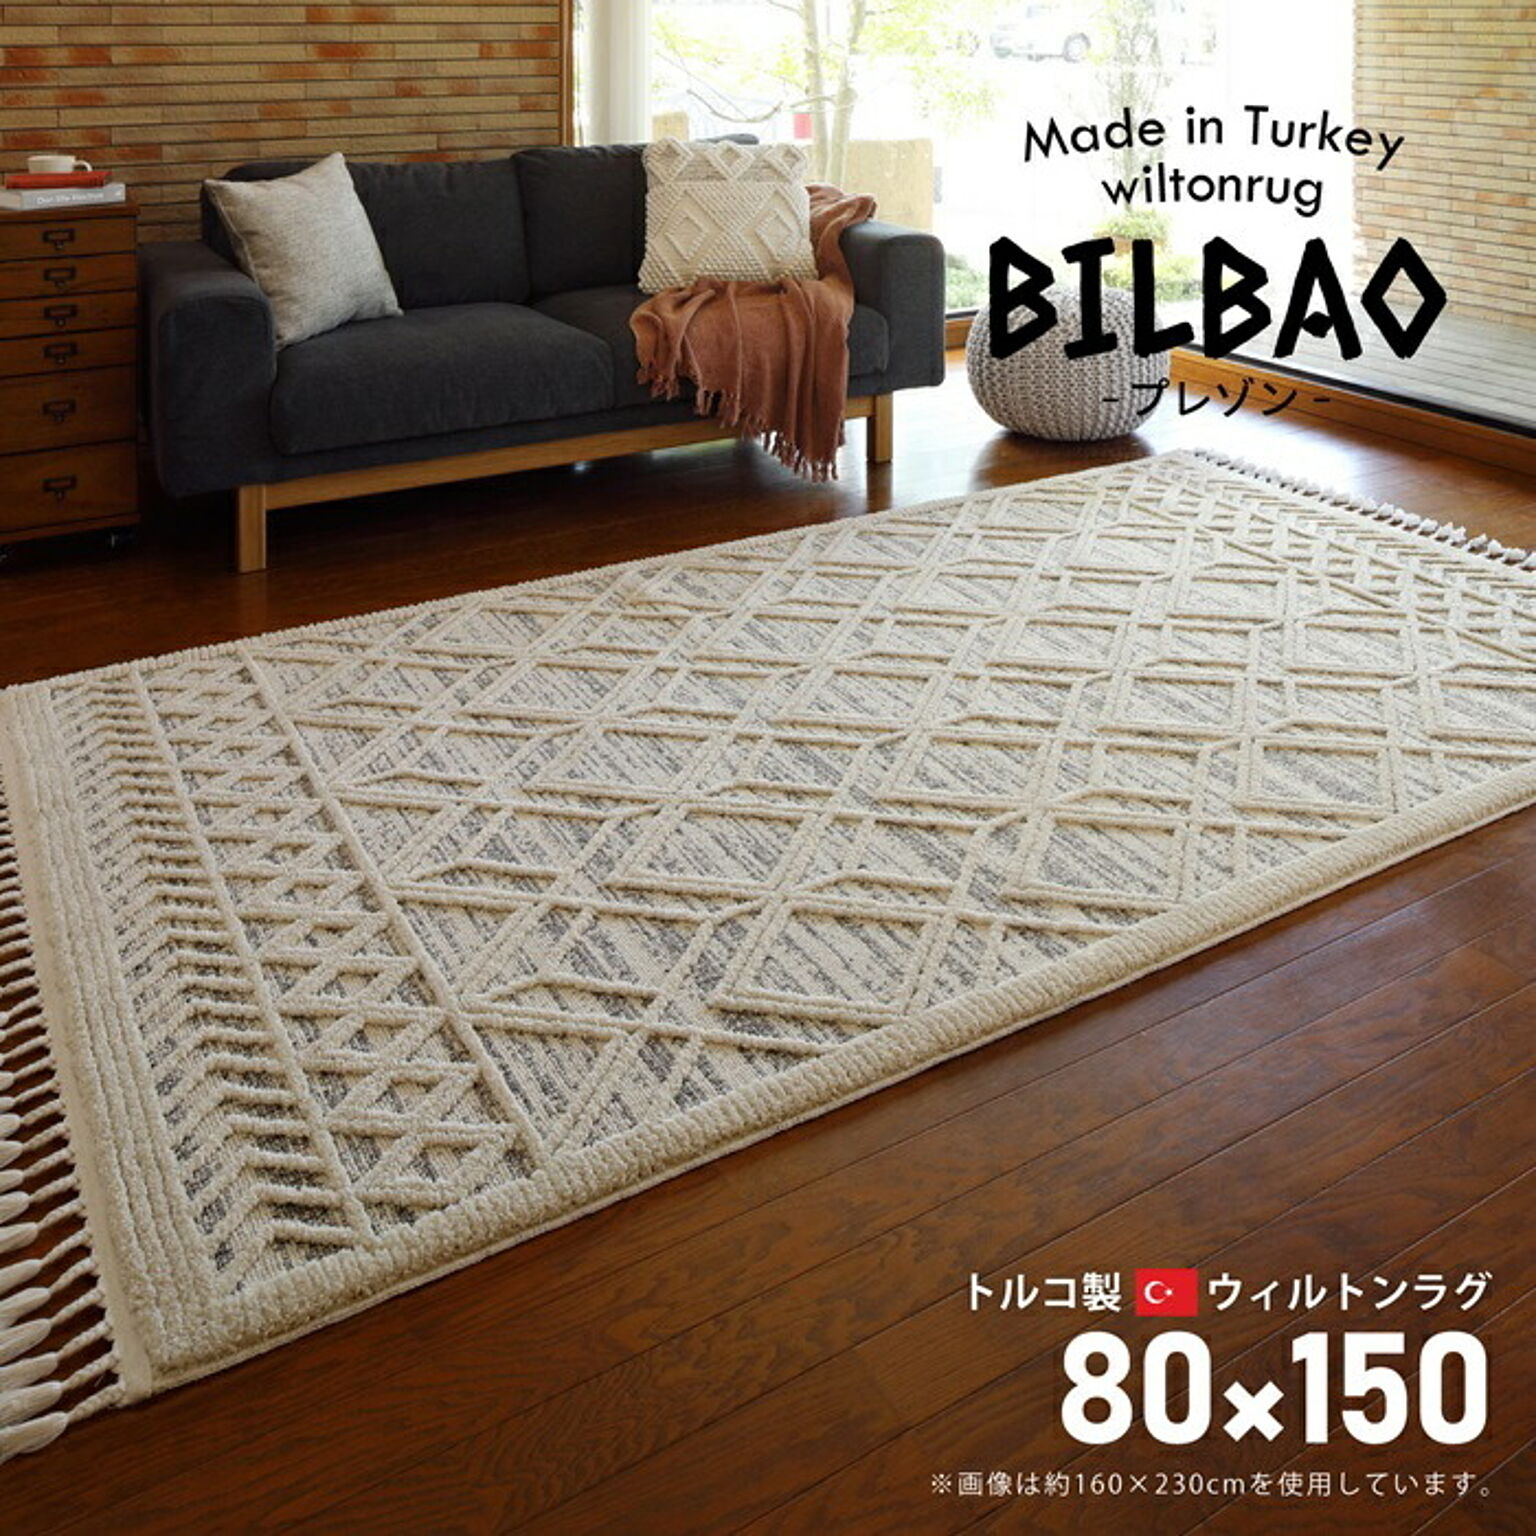 どんな部屋にも合うお洒落で可愛いウィルトンラグ BILBAO(ビルバオ) 80×150 プレゾン